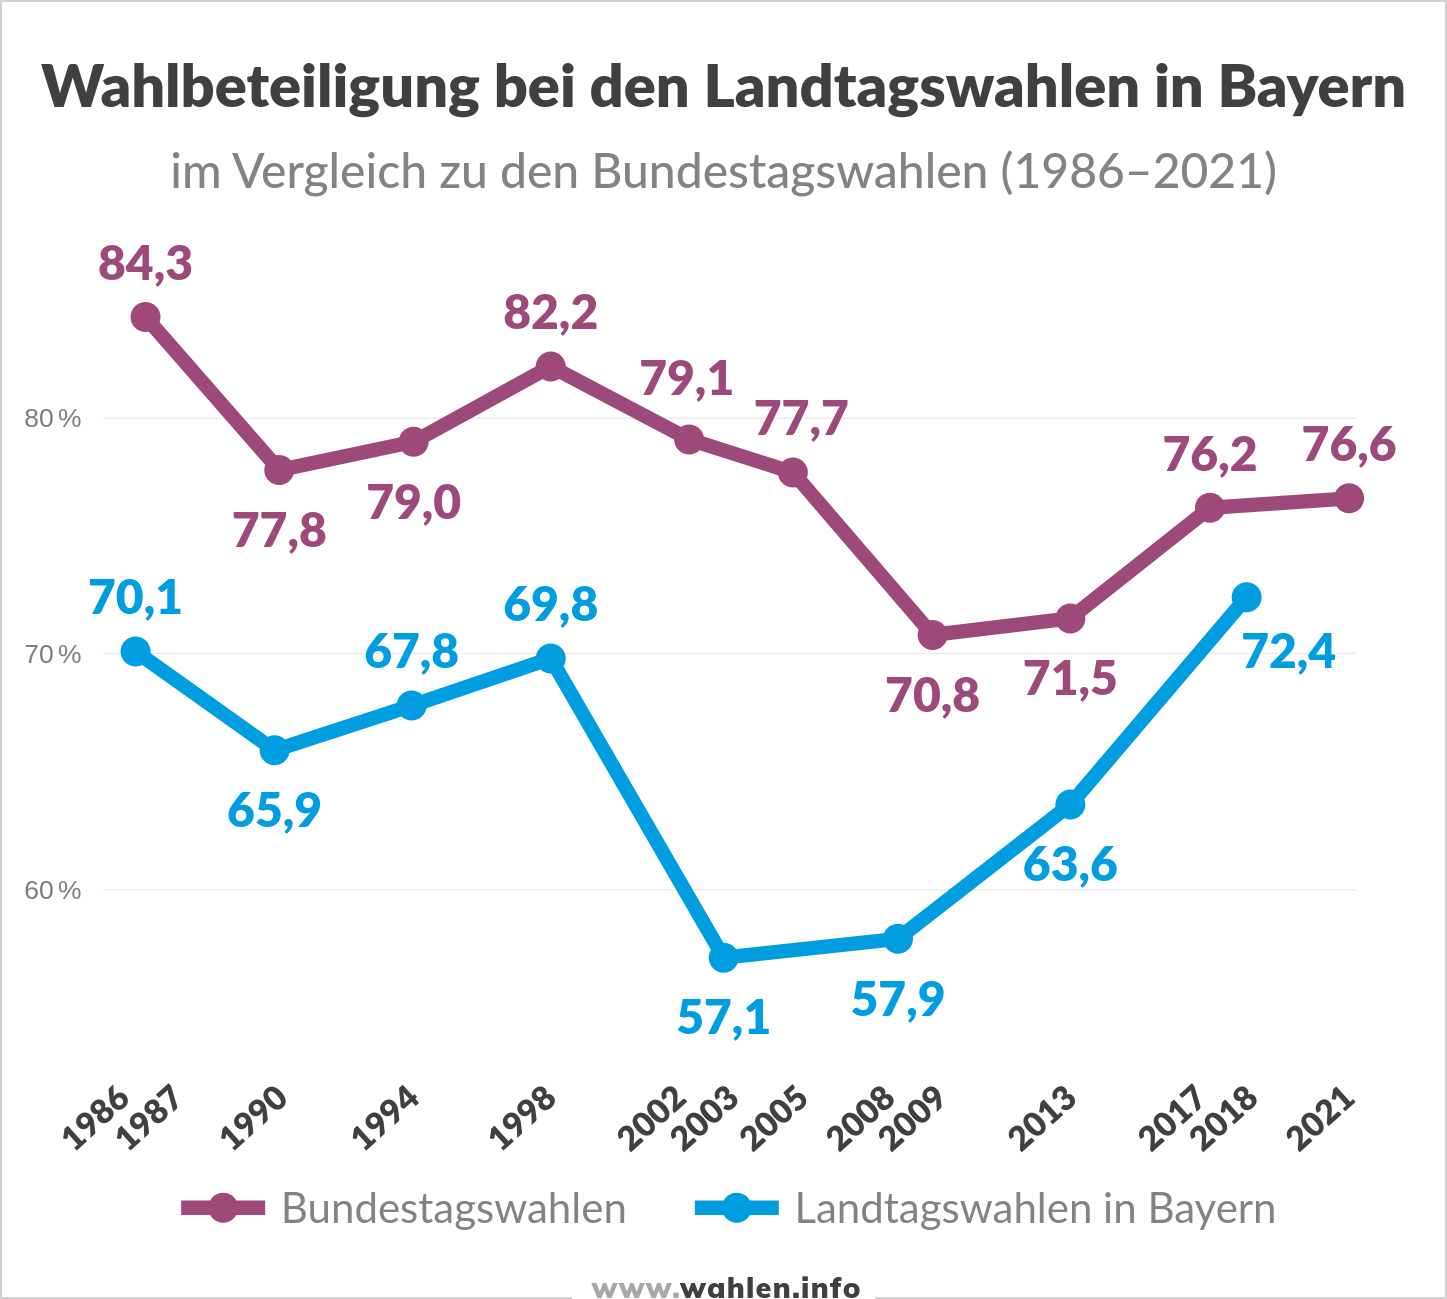 Wahlbeteiligung bei Landtagswahlen in Bayern im Vergleich zu Bundestagswahlen (bis zur Landtagswahl 2023)